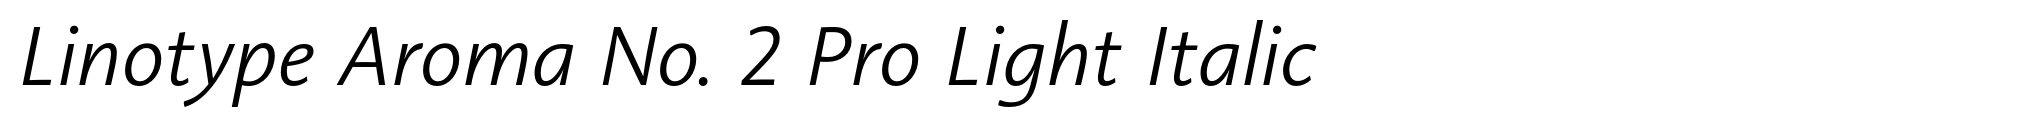 Linotype Aroma No. 2 Pro Light Italic image